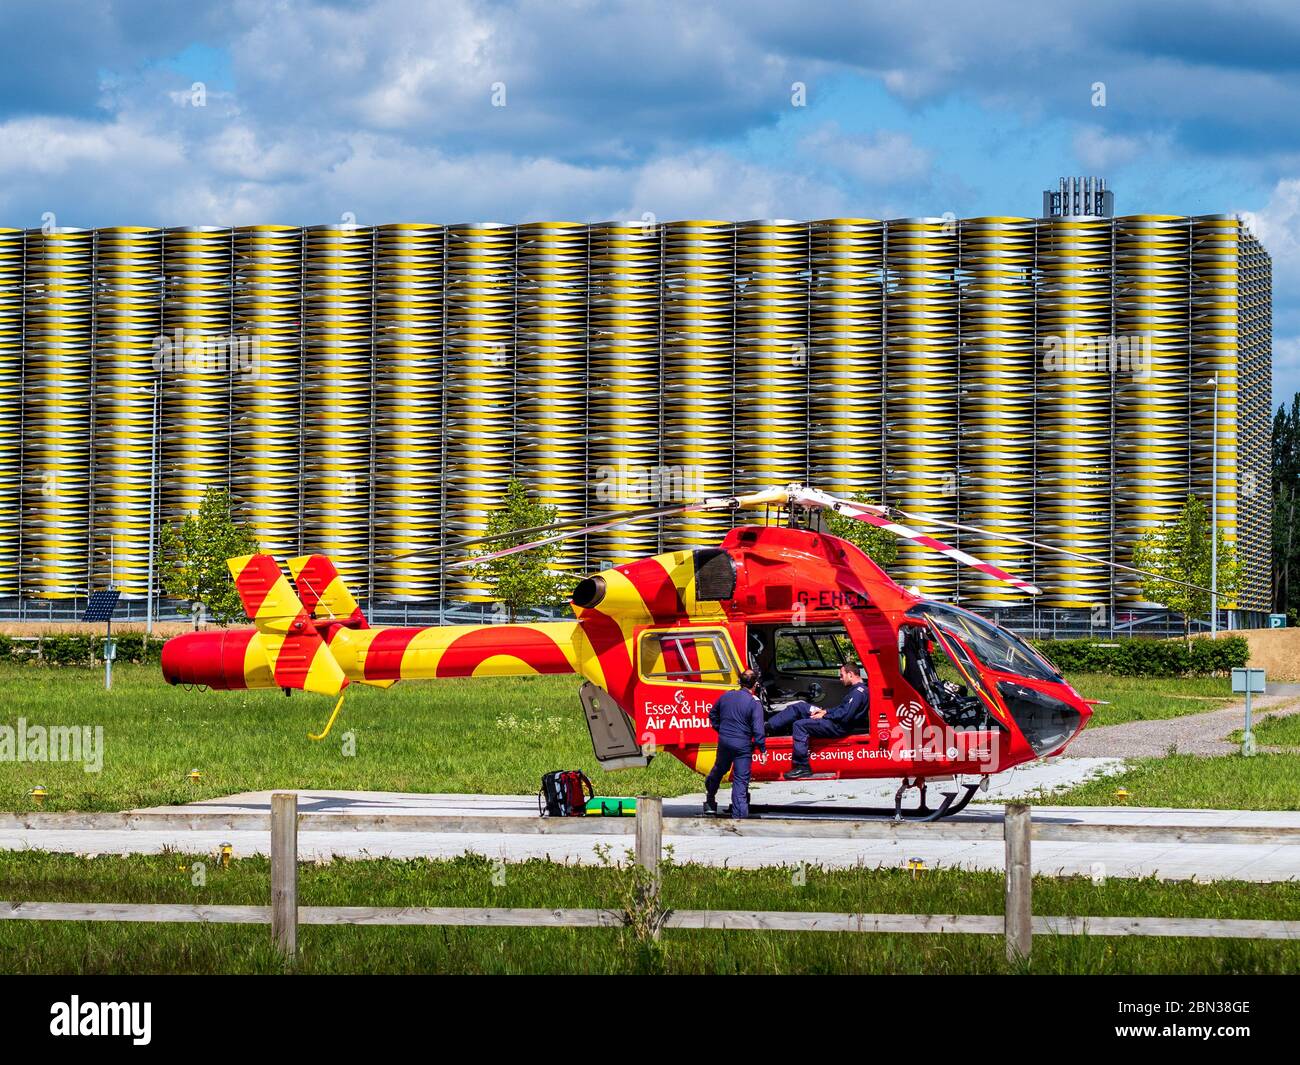 Ambulancia aérea de helicóptero Cambridge. El Essex & Herts Air Ambulance espera en el Cambridge Addebrookes Hospital Helipad. McDonnell Douglas MD902 Explorer. Foto de stock